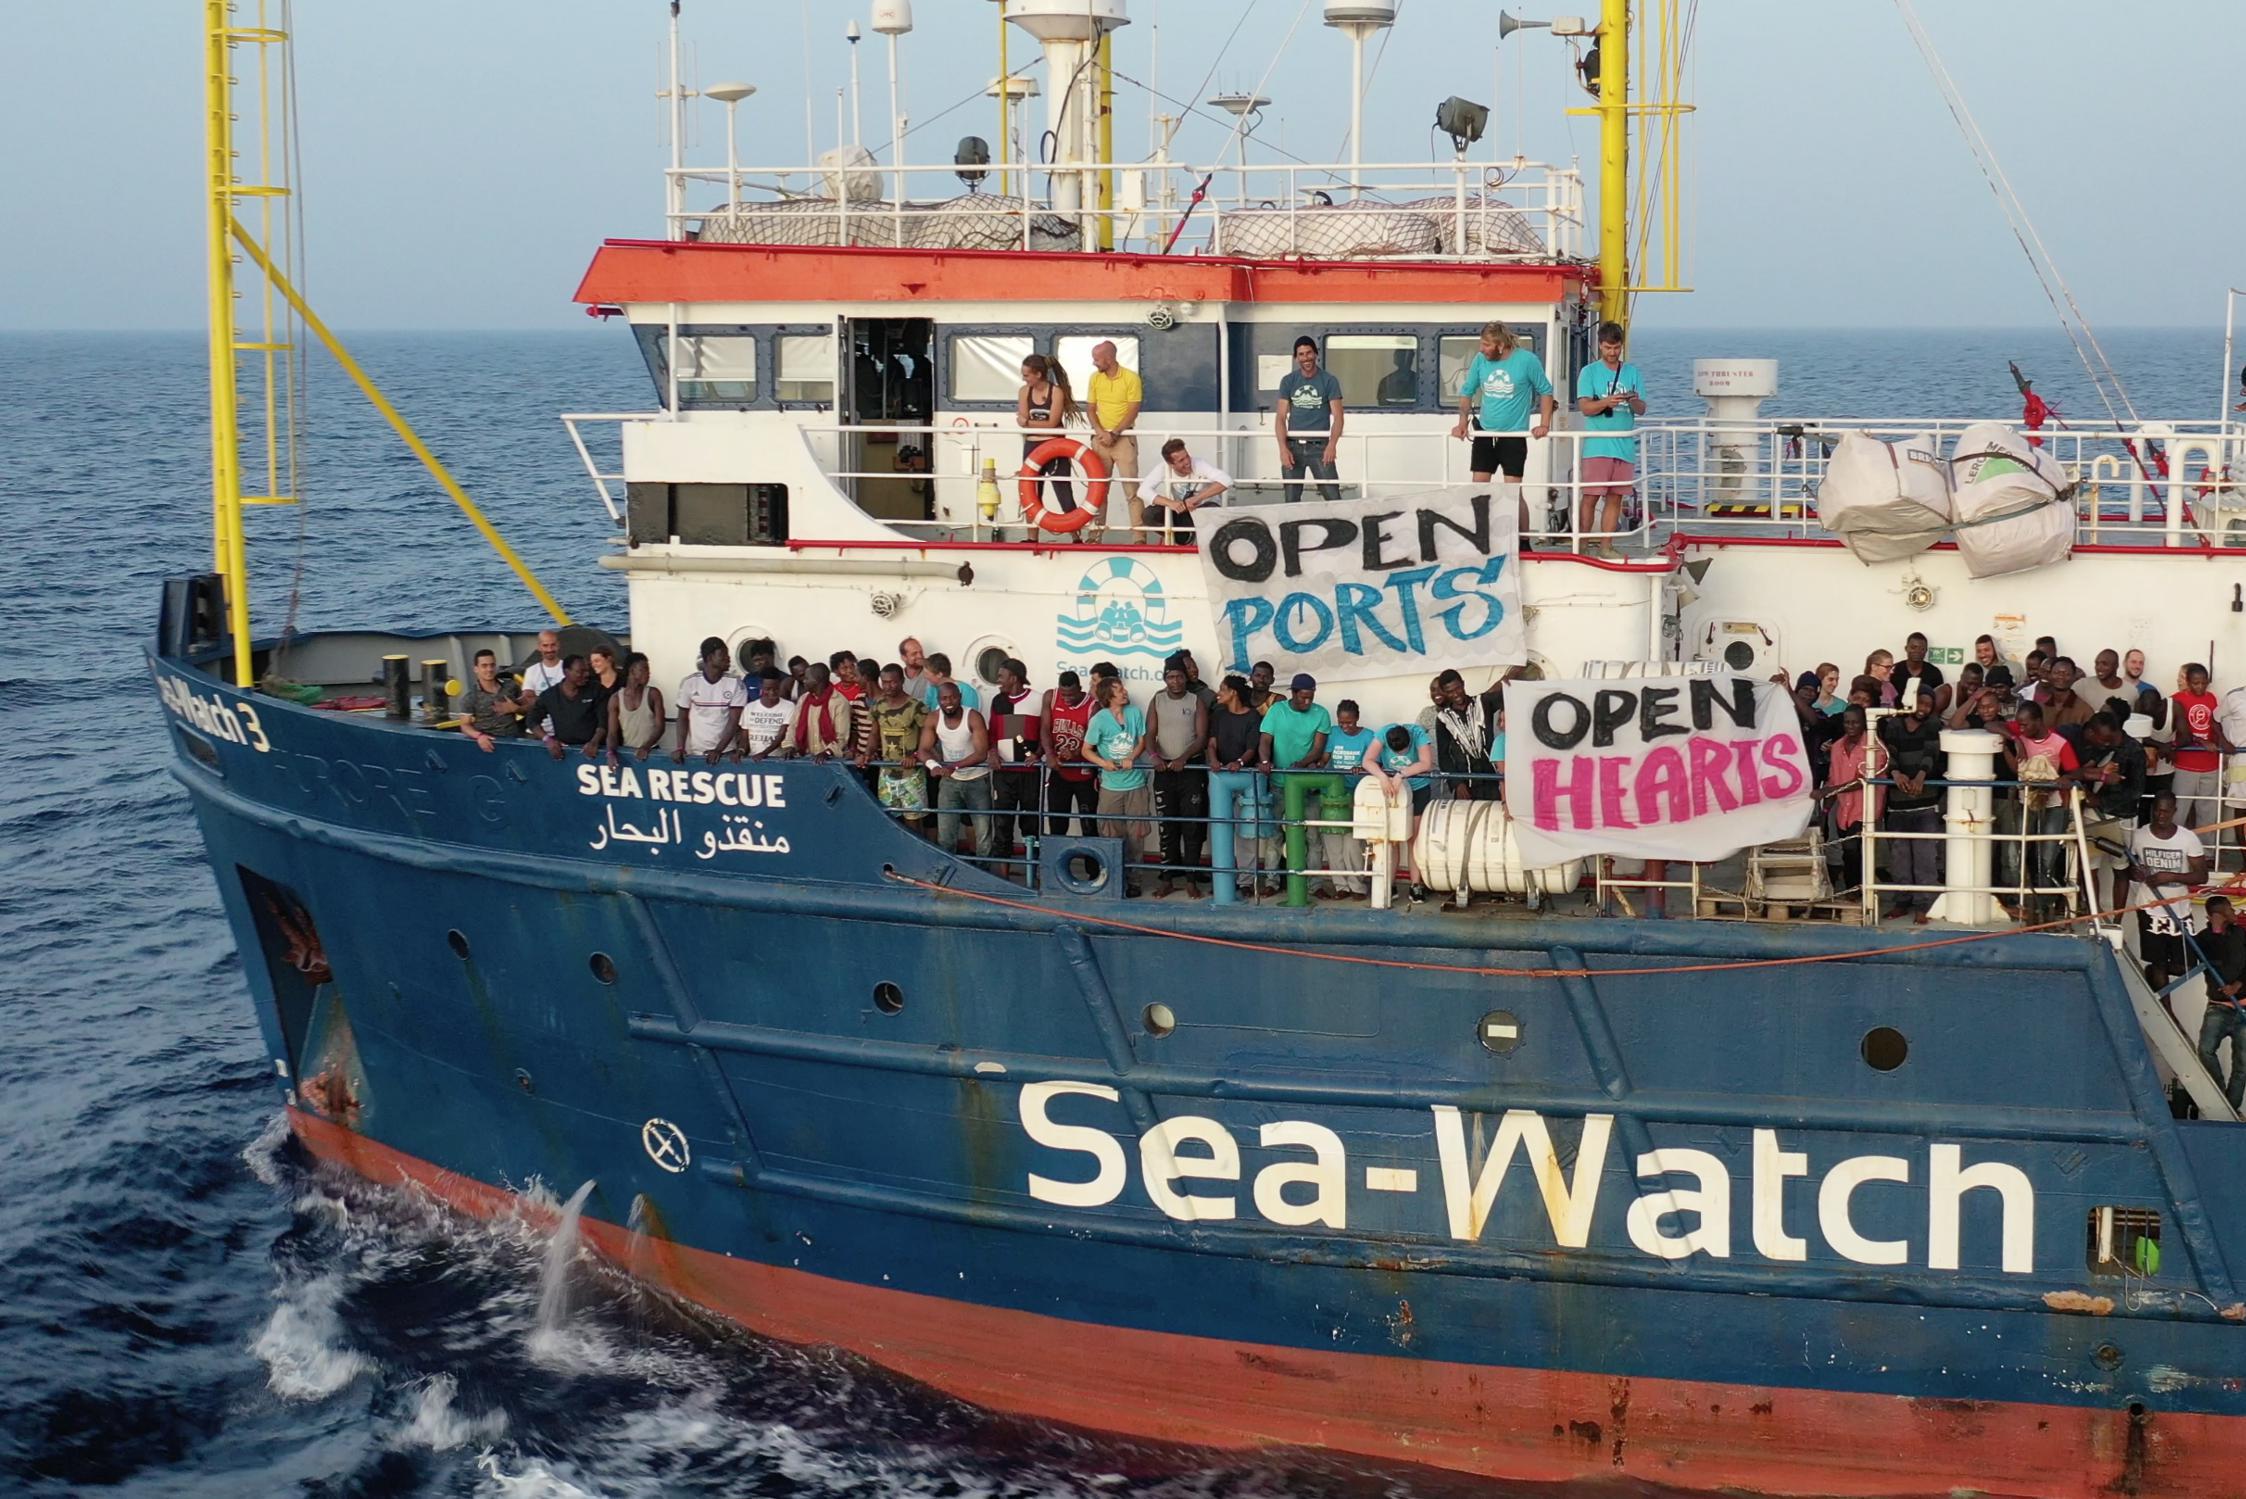 Le autorità arrestano nave di soccorso tedesca nel sud Italia